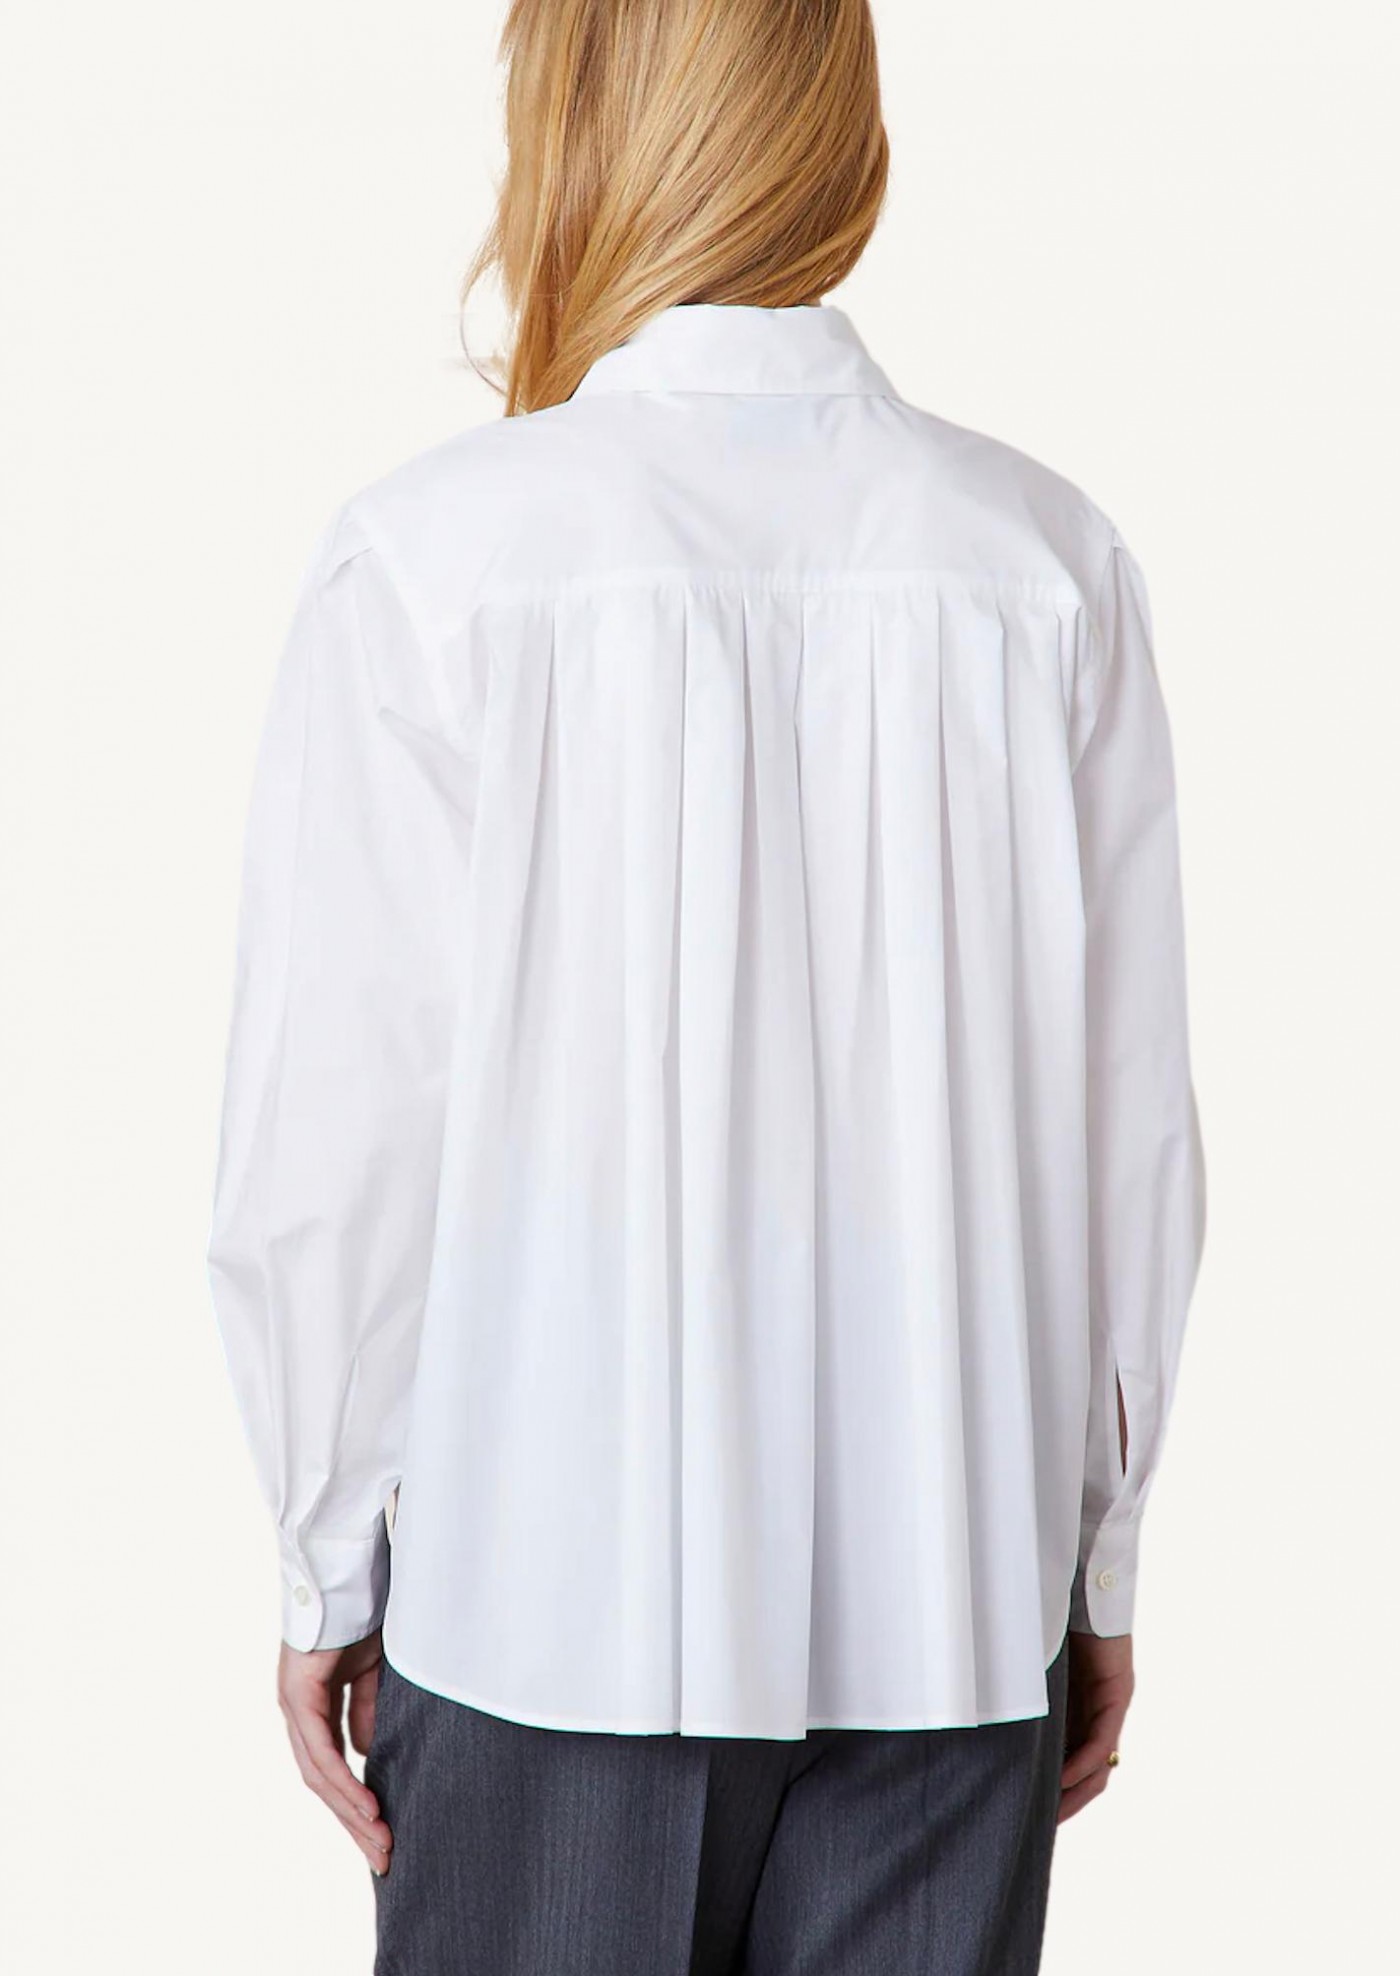 Mahault white shirt